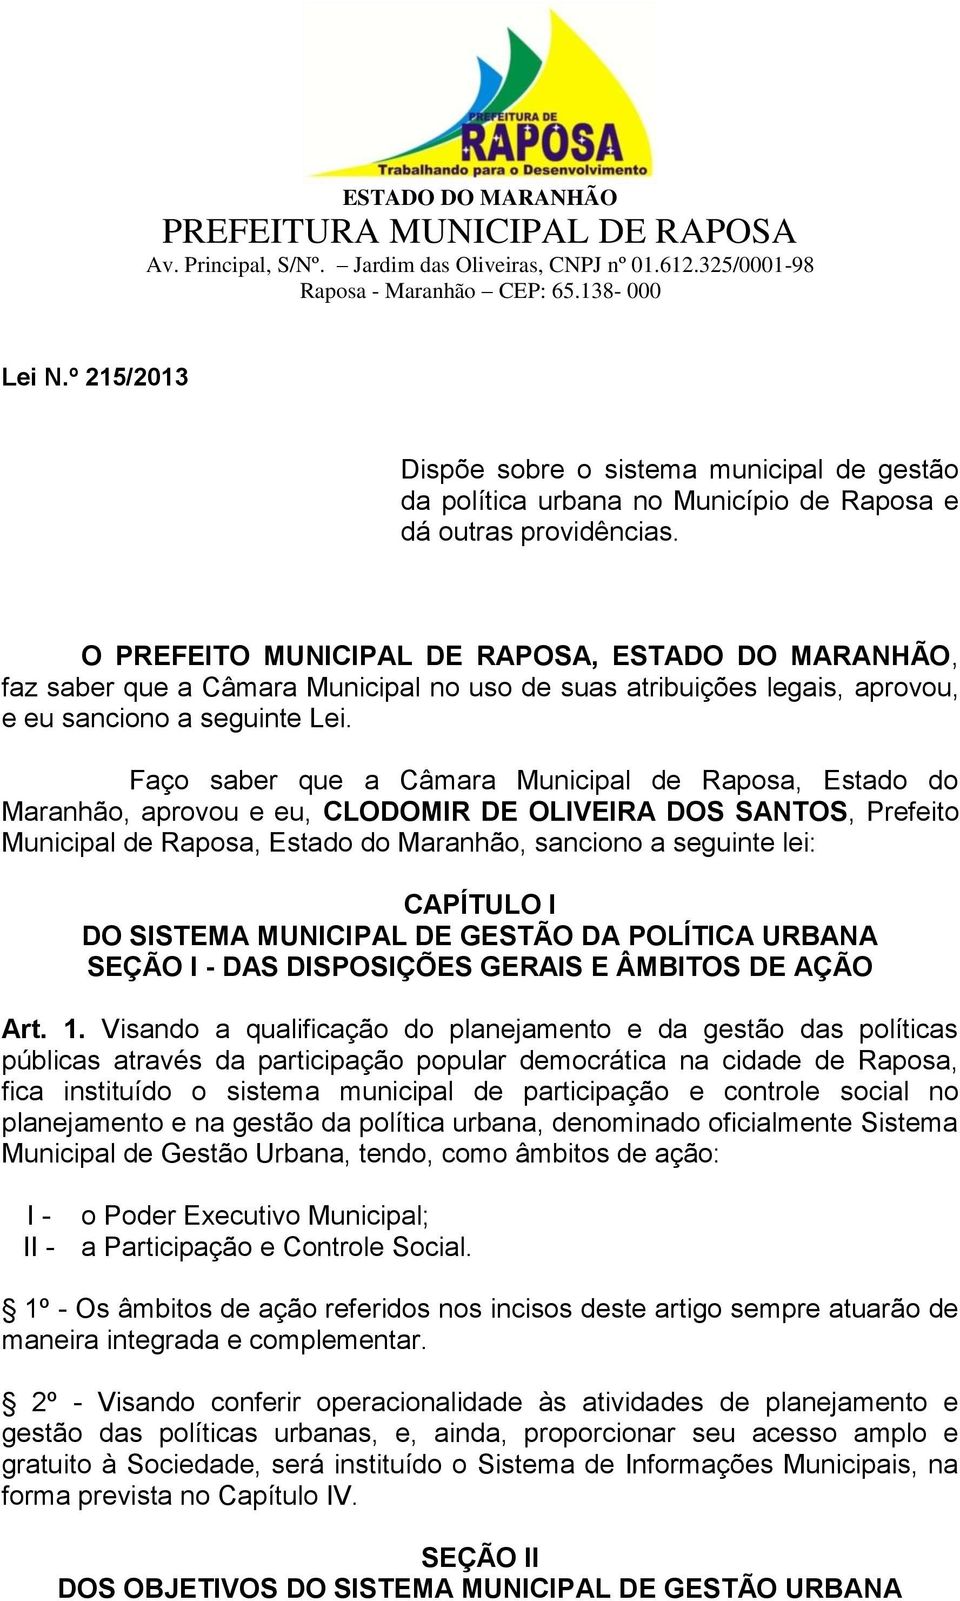 Faço saber que a Câmara Municipal de Raposa, Estado do Maranhão, aprovou e eu, CLODOMIR DE OLIVEIRA DOS SANTOS, Prefeito Municipal de Raposa, Estado do Maranhão, sanciono a seguinte lei: CAPÍTULO I